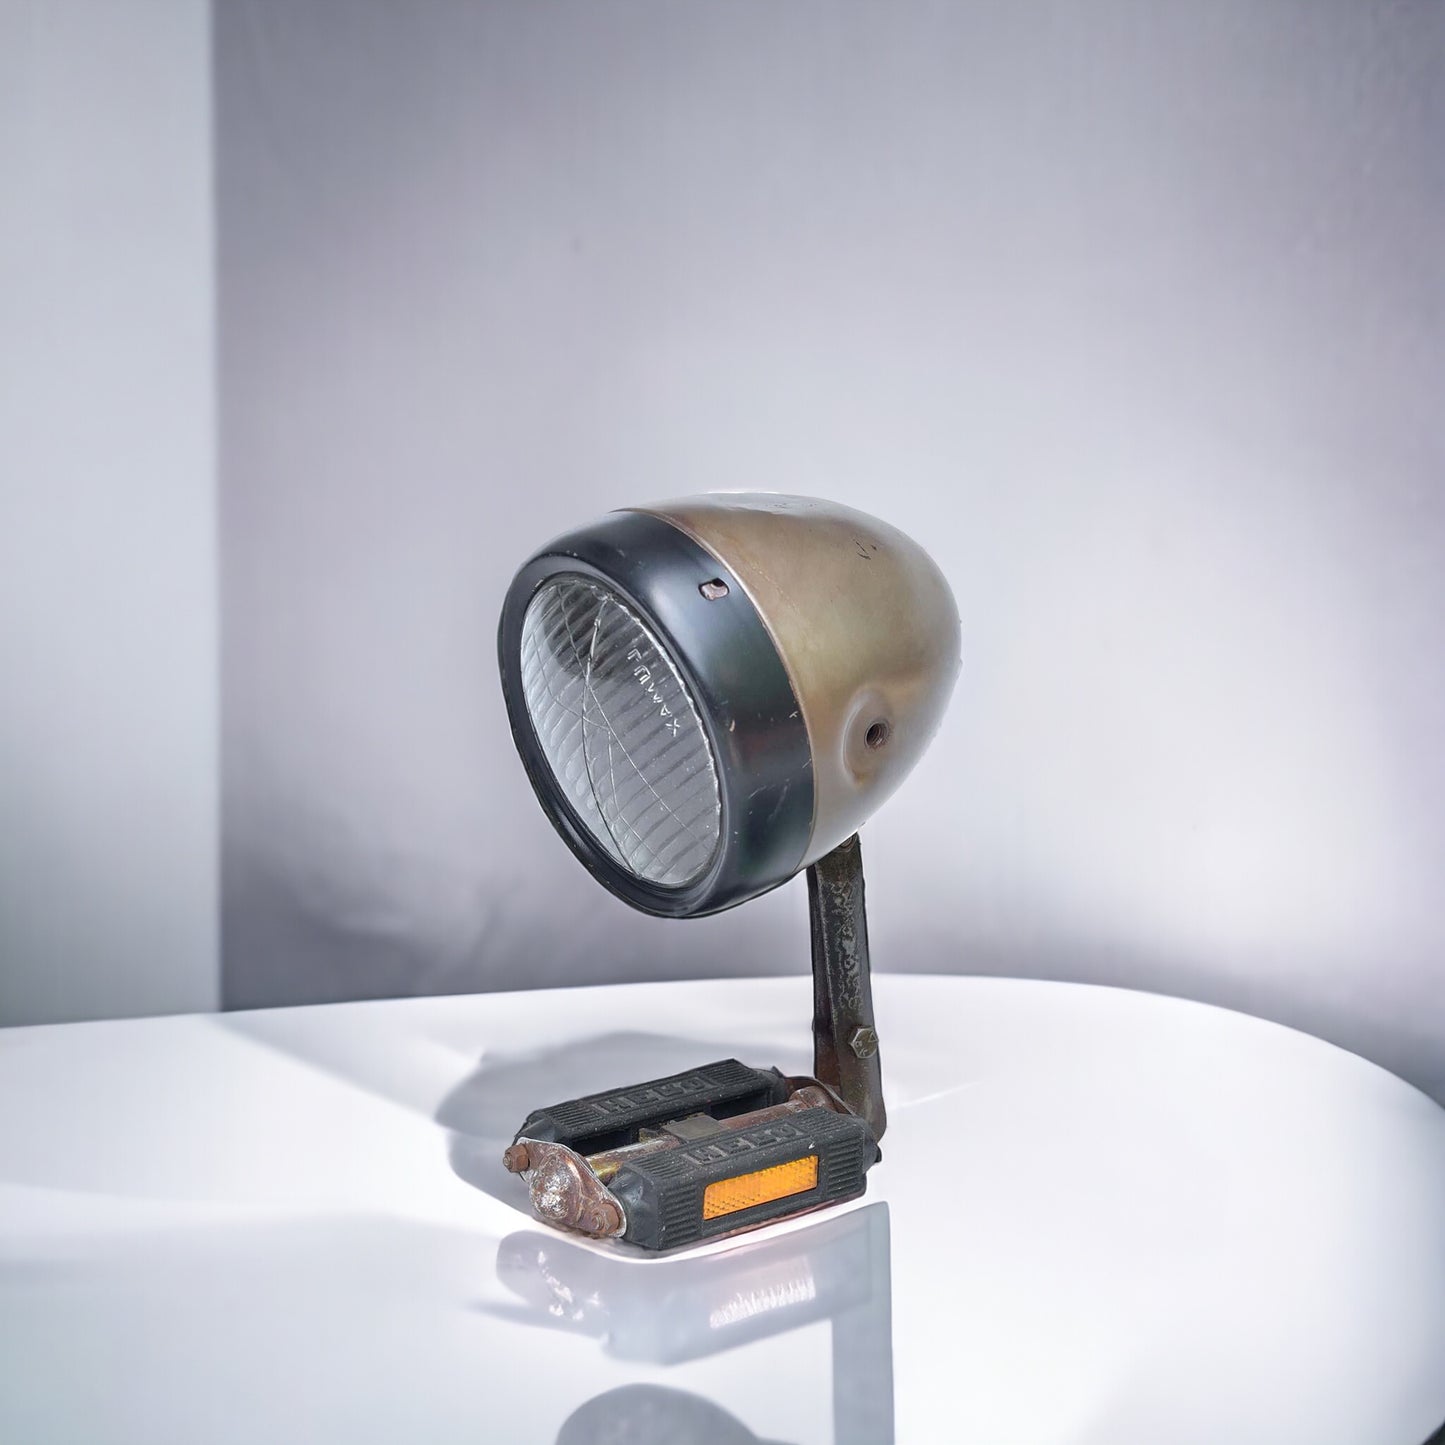 Tischlampe "Vita" - Upcycling aus altem Mopedscheinwerfer 24 x 15 cm mit Schalter